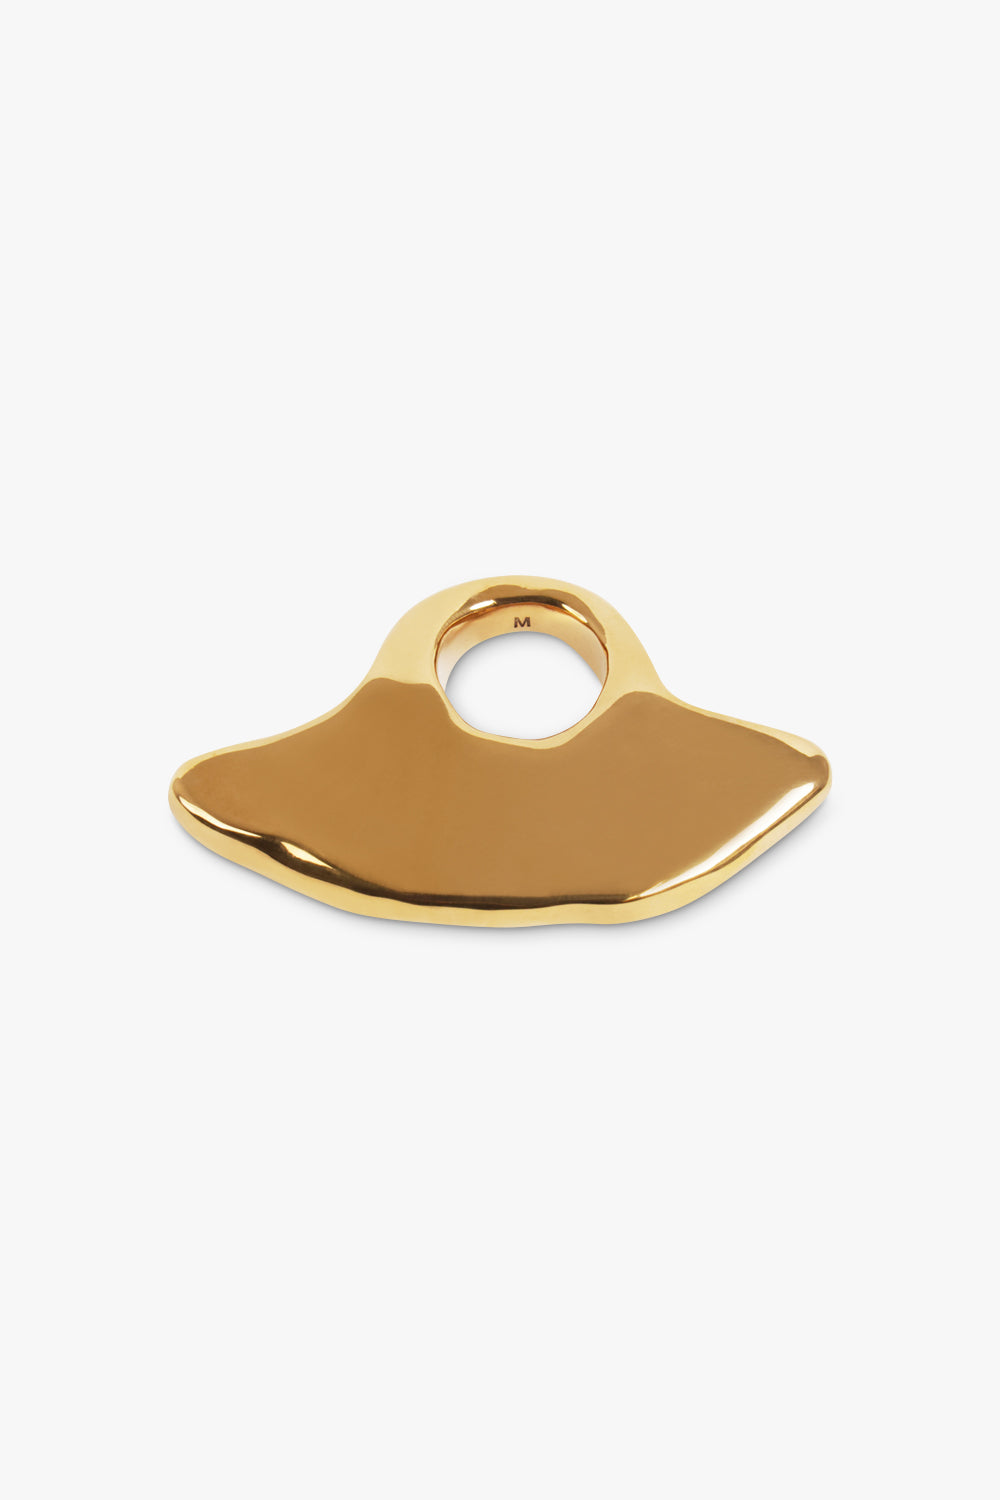 DRIES VAN NOTEN JEWELLERY Sculptured Ring | Brass